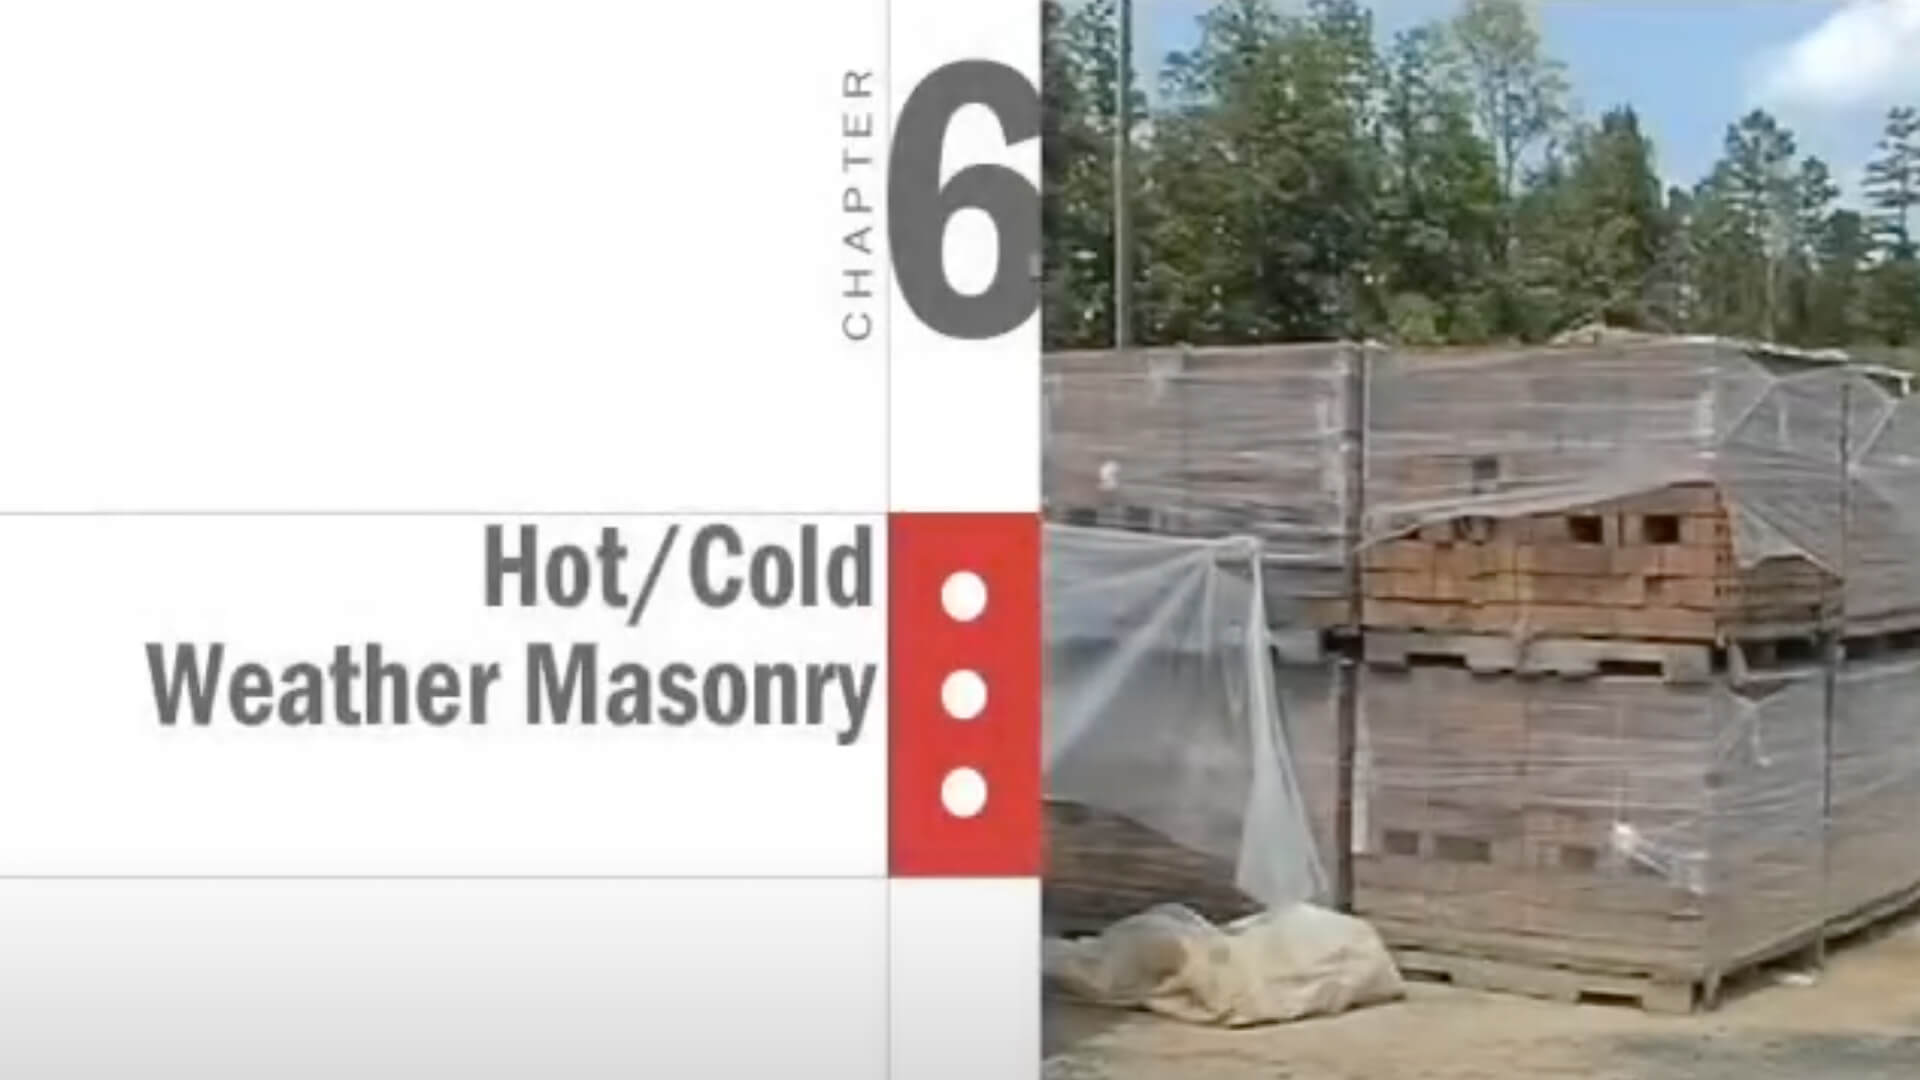 Hot/Cold Weather Masonry